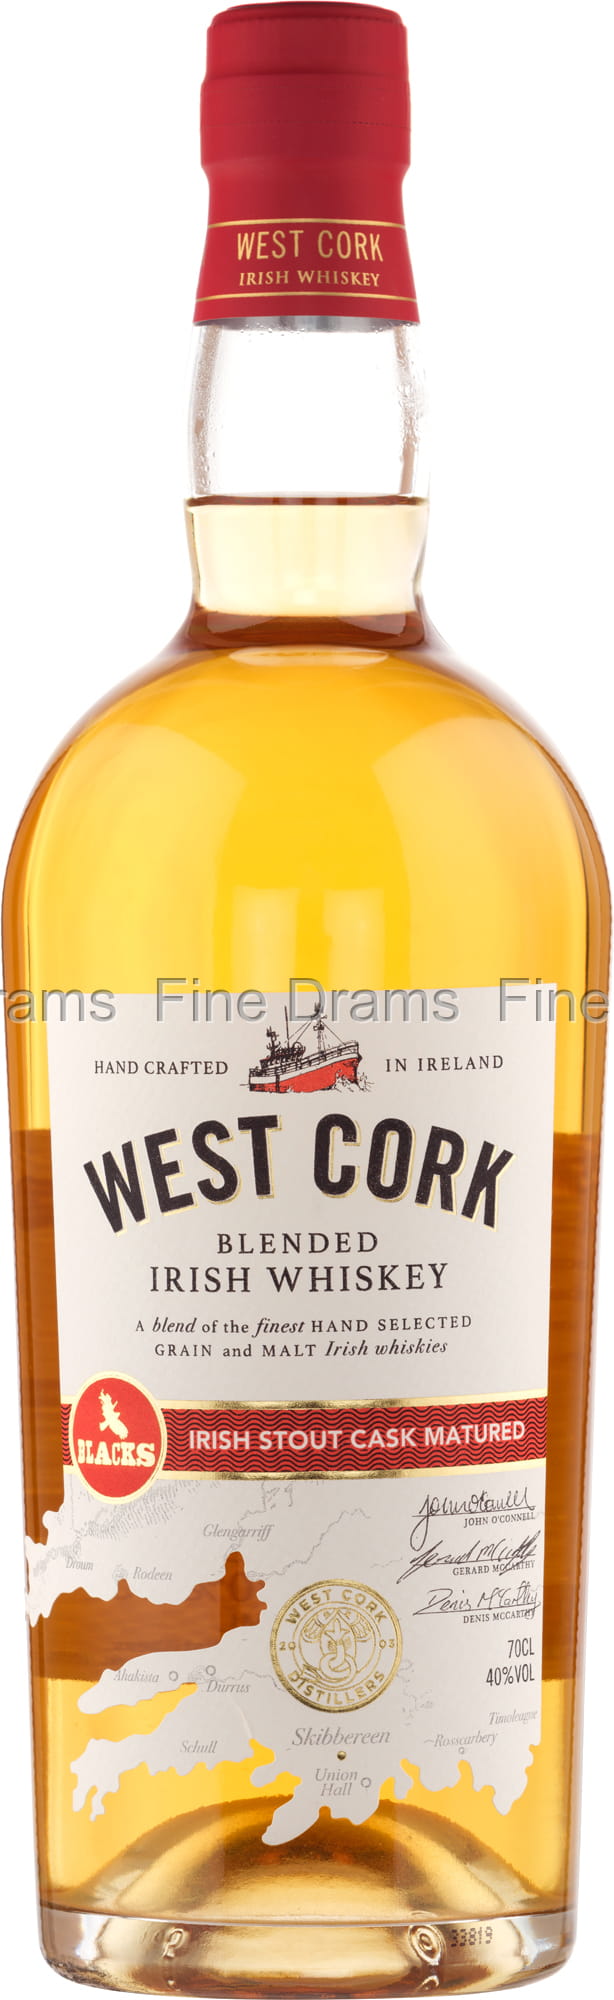 West Cork Irish Stout Cask Matured Whisky | Whisky